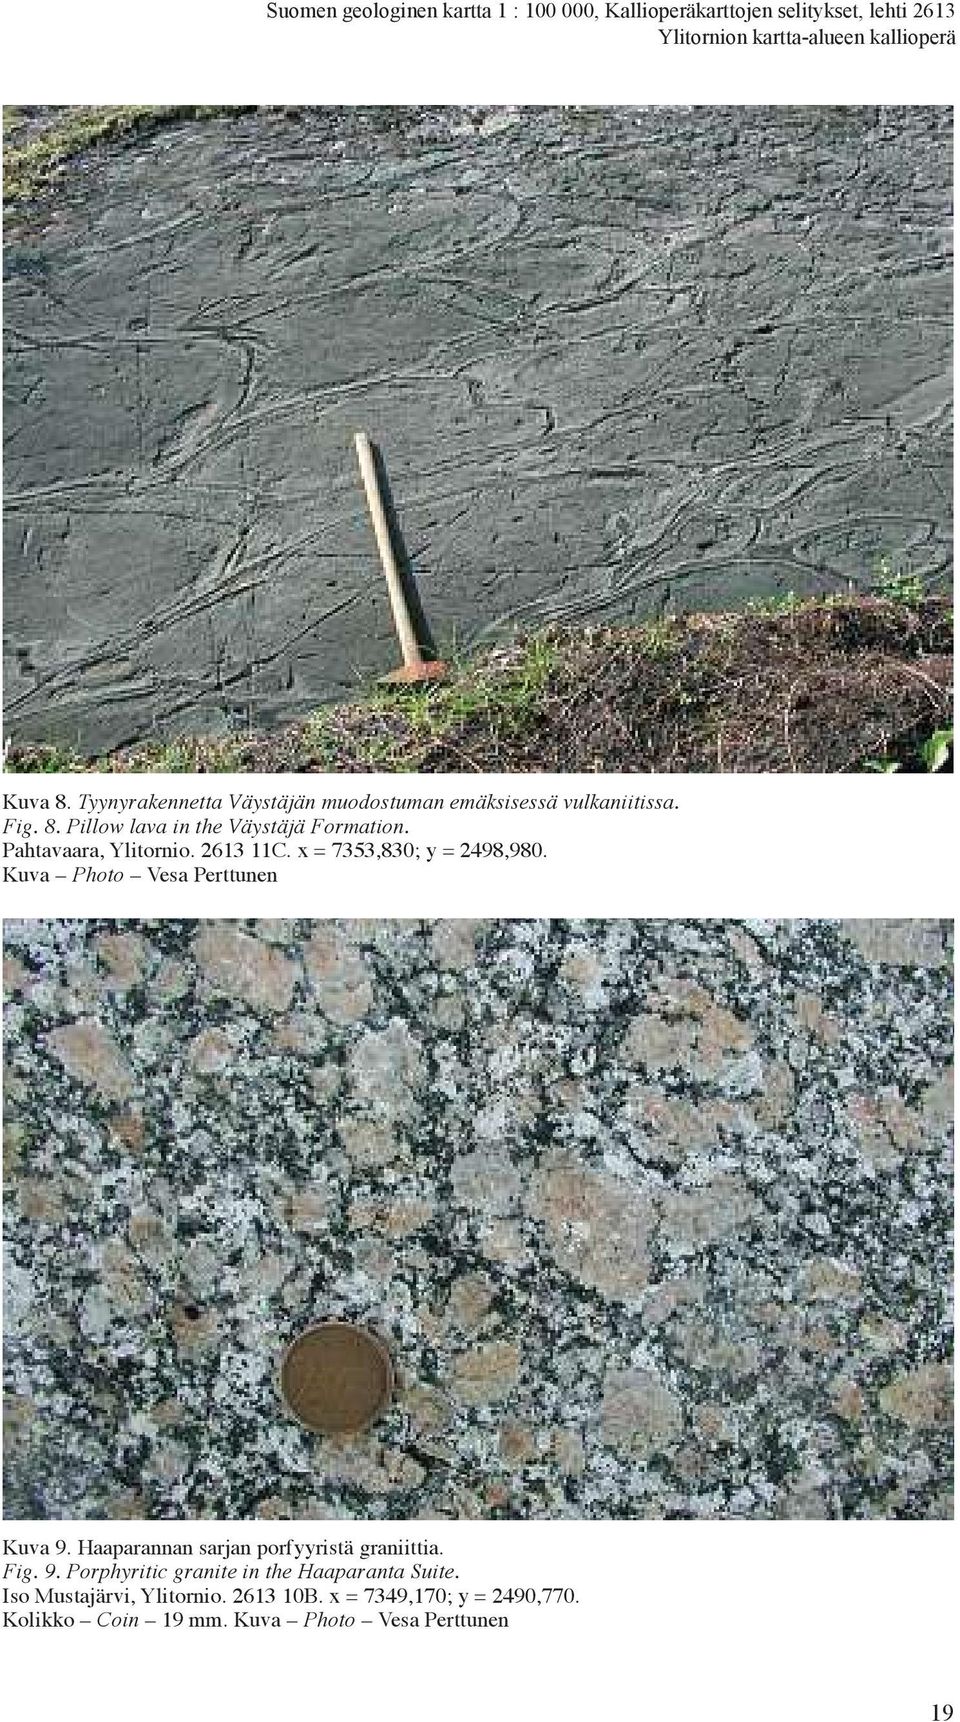 Kuva Photo Vesa Perttunen Kuva 9. Haaparannan sarjan porfyyristä graniittia. Fig. 9. Porphyritic granite in the Haaparanta Suite.